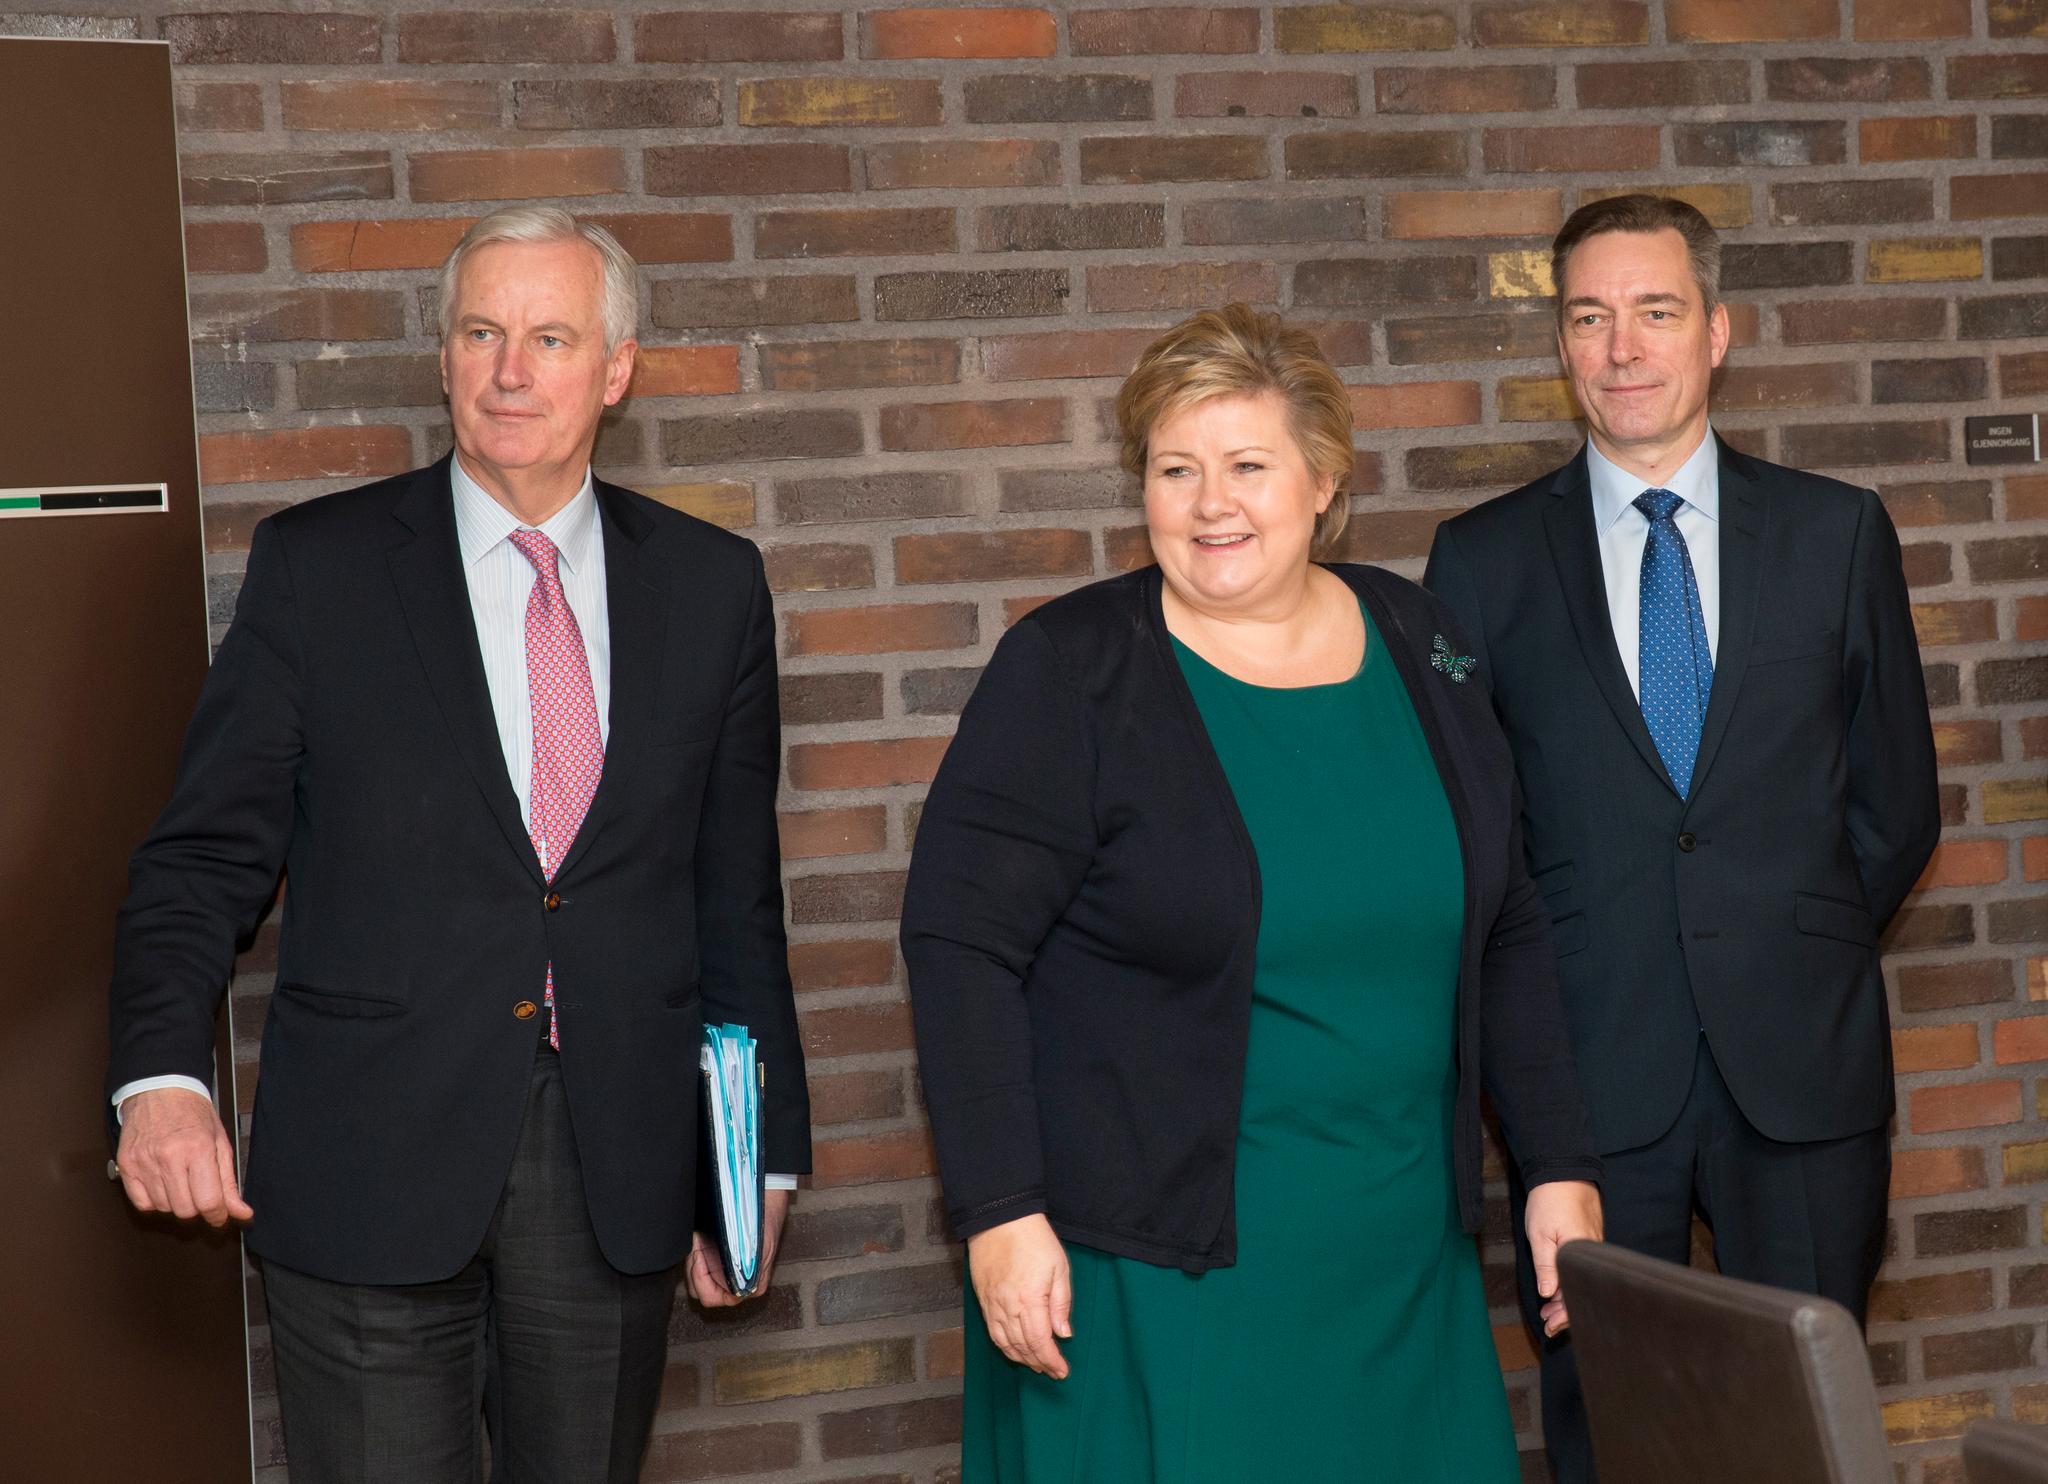  Statsminister Erna Solberg møtte Michel Barnier, sjefsforhandler for brexit i EU-kommisjonen da han var i Norge. EØS- og EU-minister Frank Bakke-Jensen til høyre. 